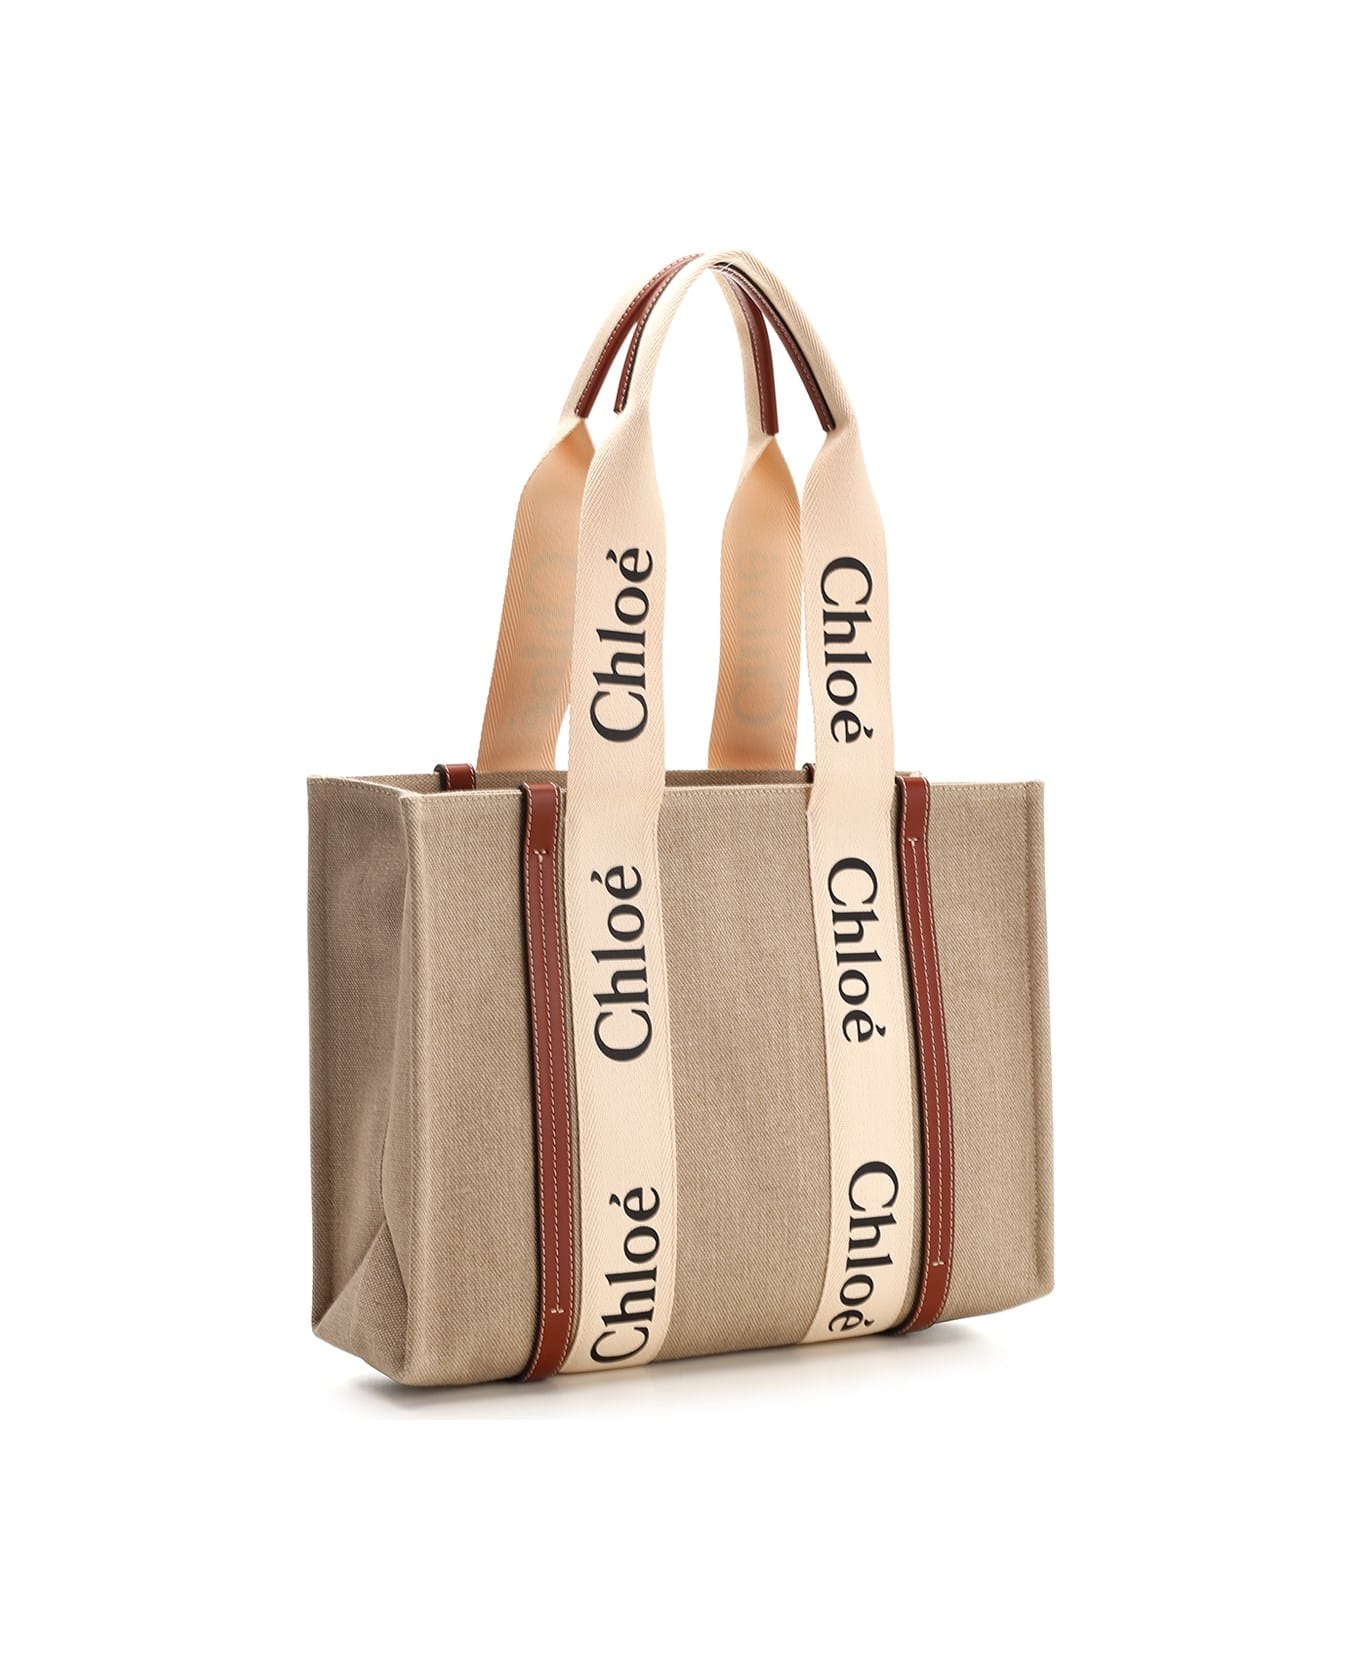 Chloé Medium 'woody' Tote Bag - Brown